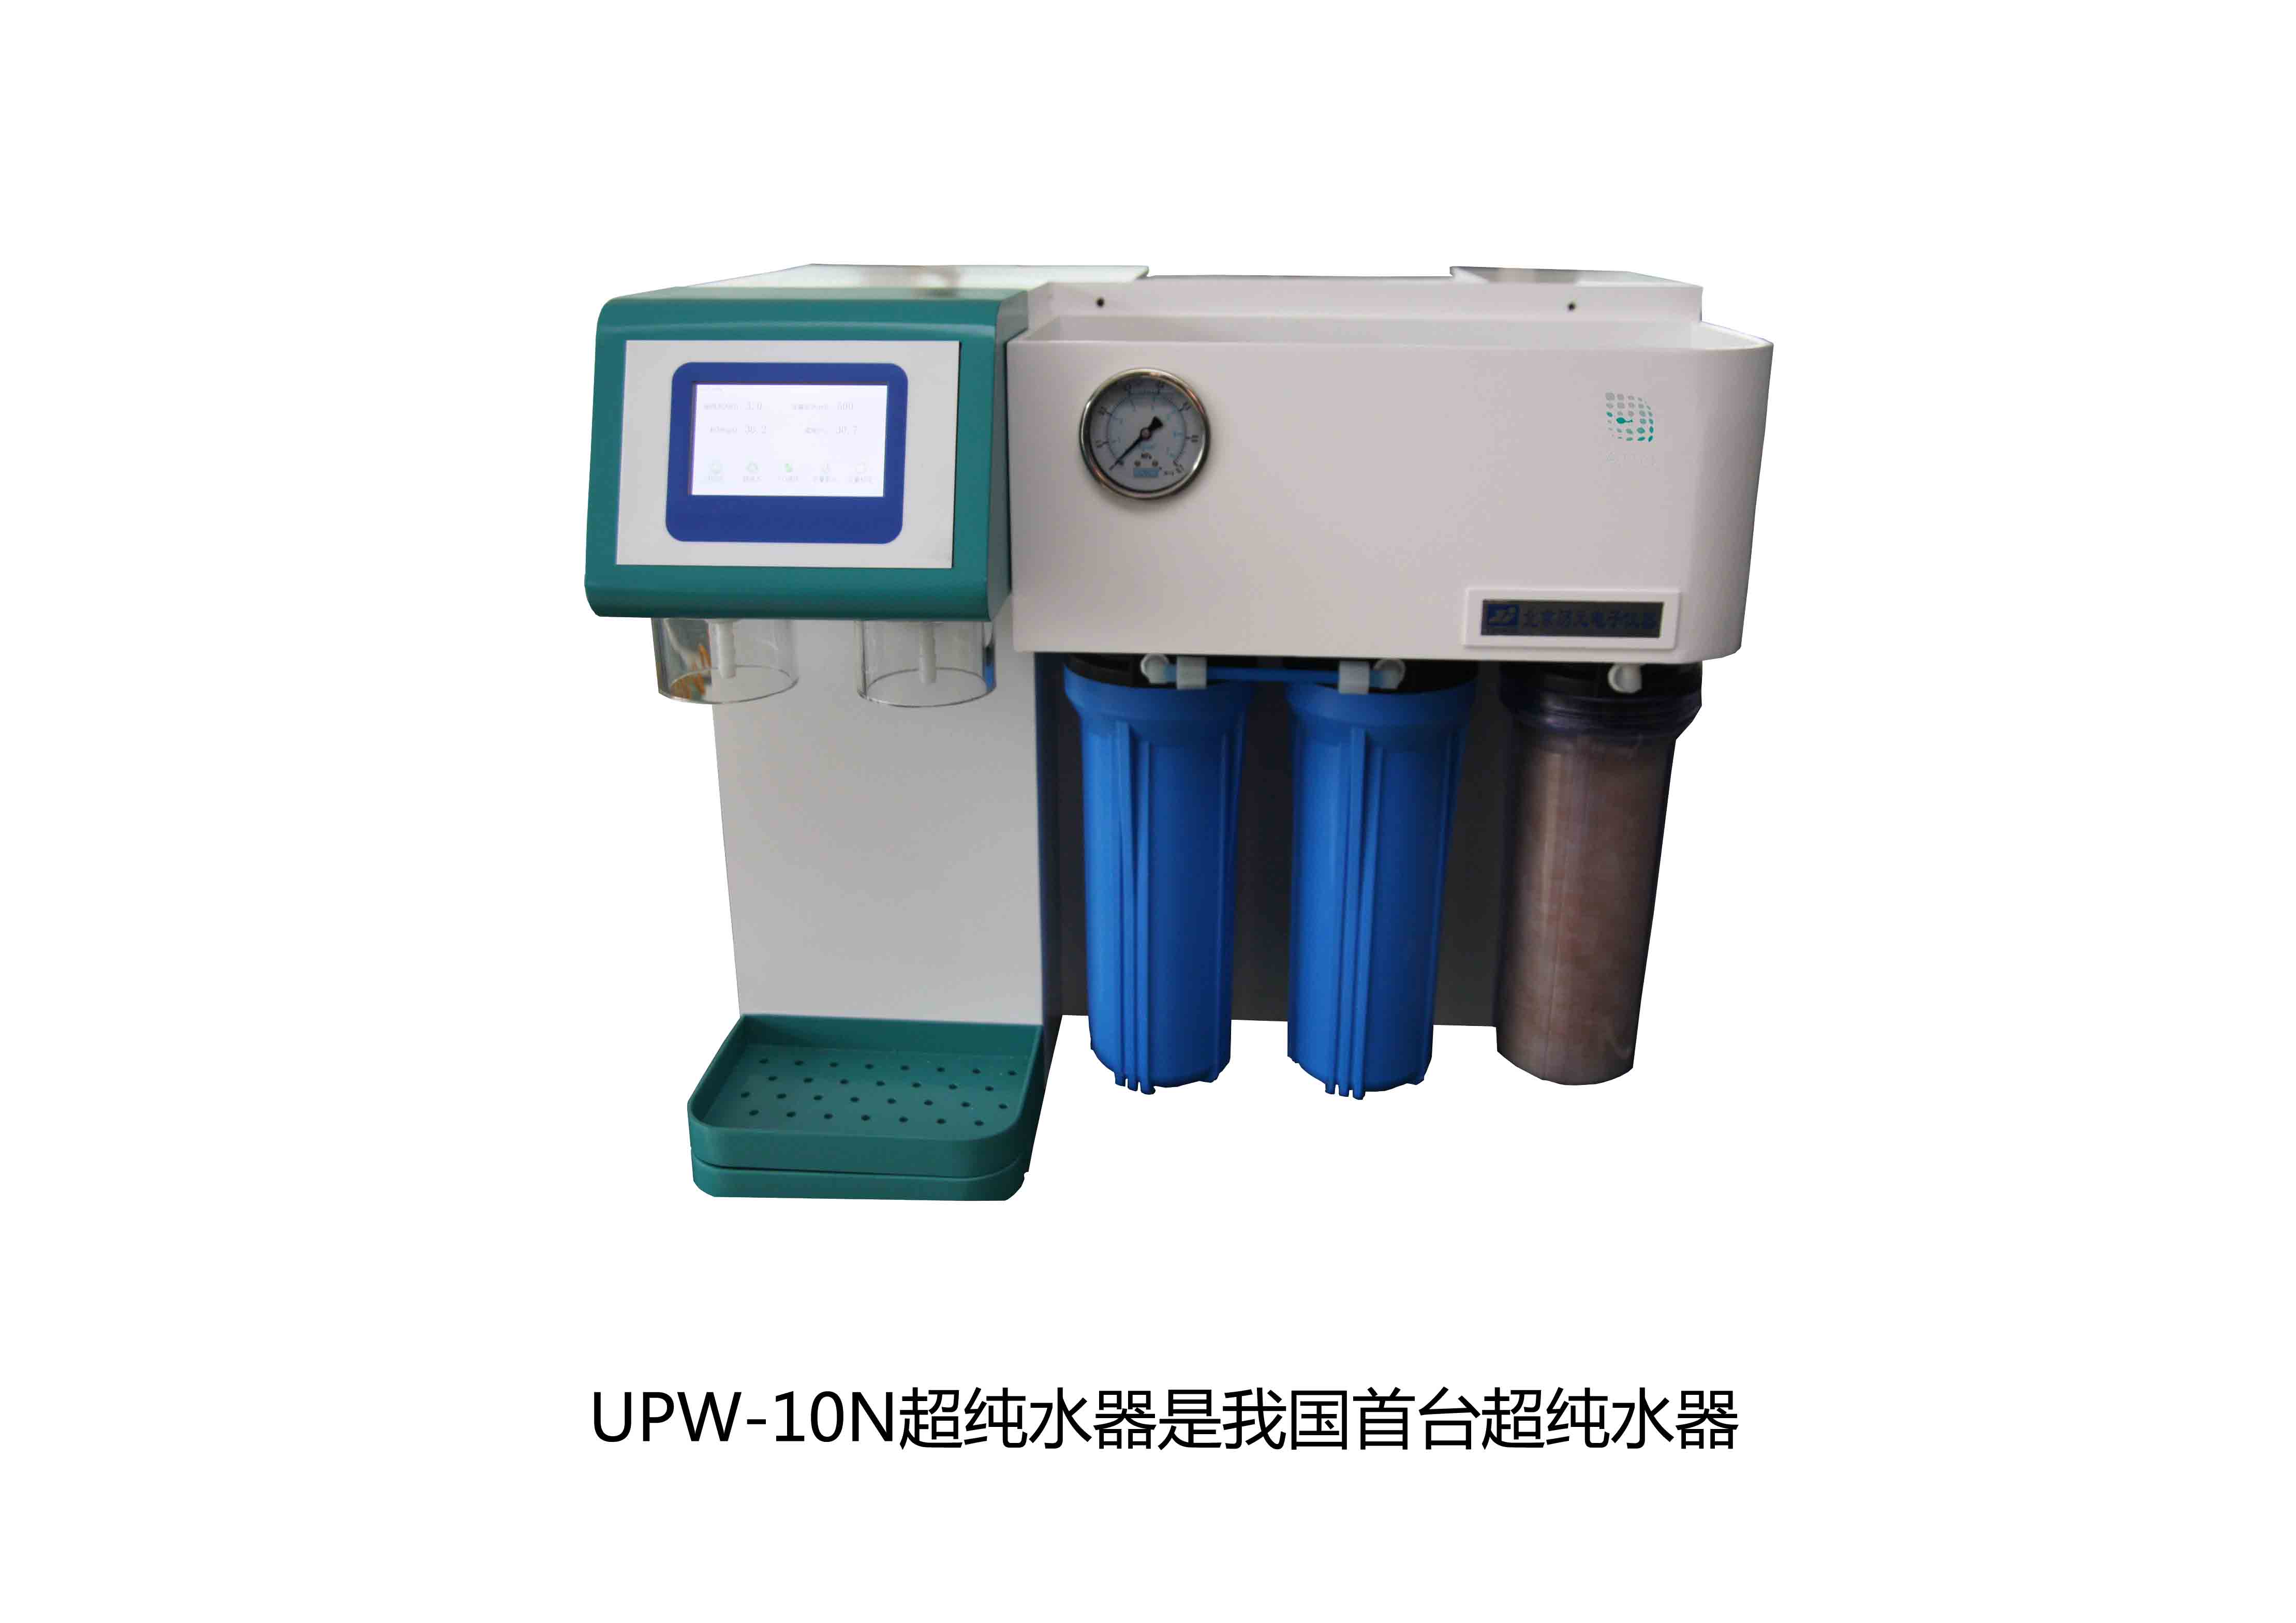 UPW-10N超纯水器是我国首台超纯水器，拉开了国产纯水器新篇章